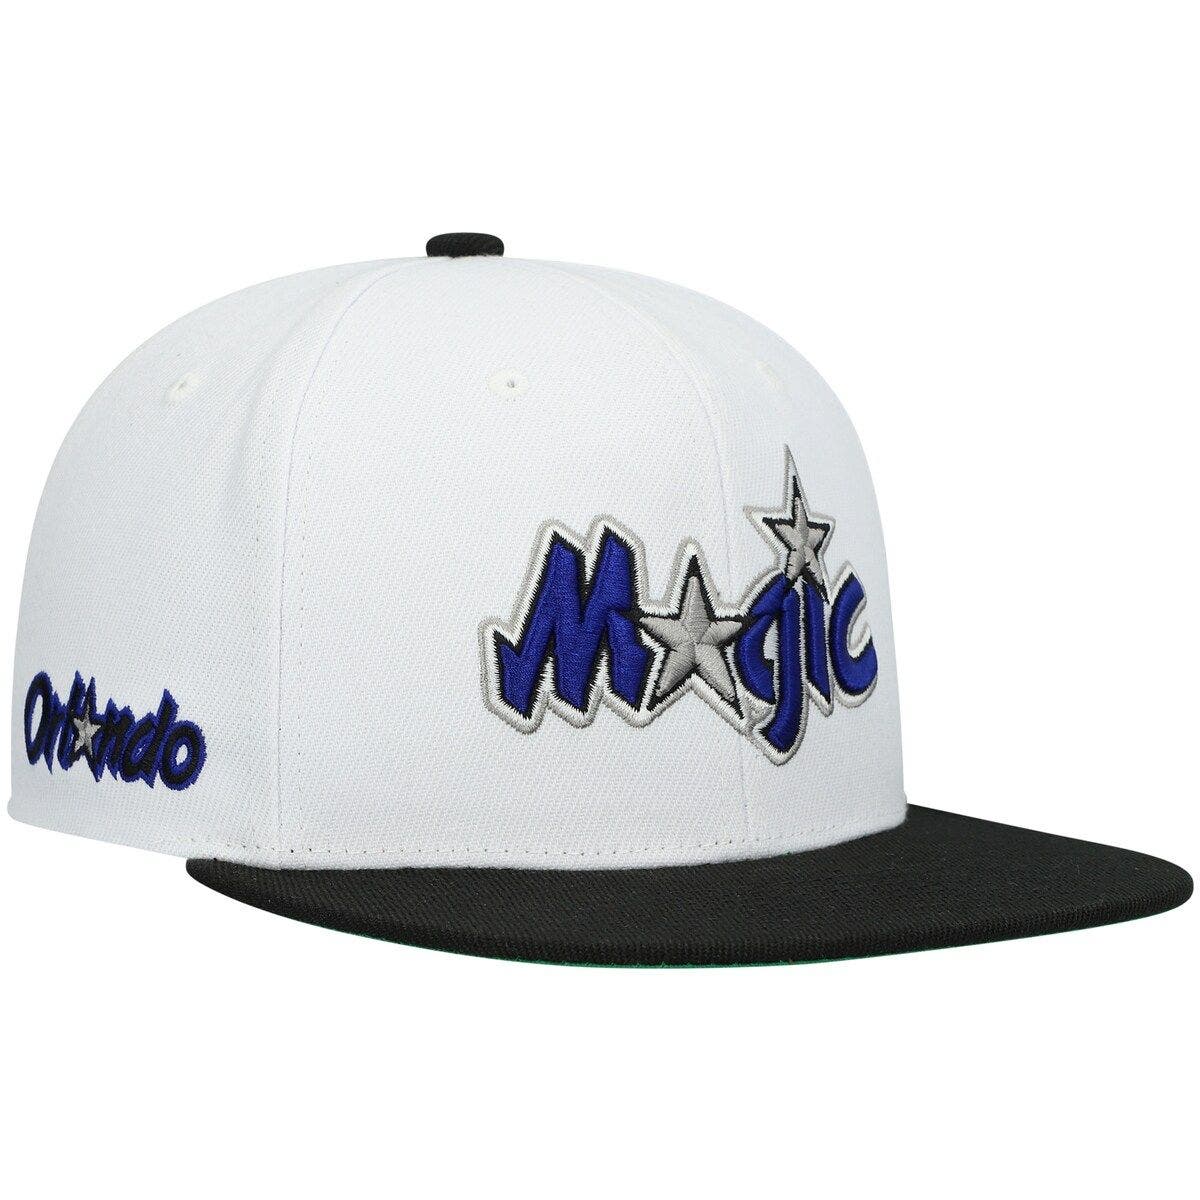 Baseball Hats - NBA Orlando Magic 75th Anniversary Gold Snapback